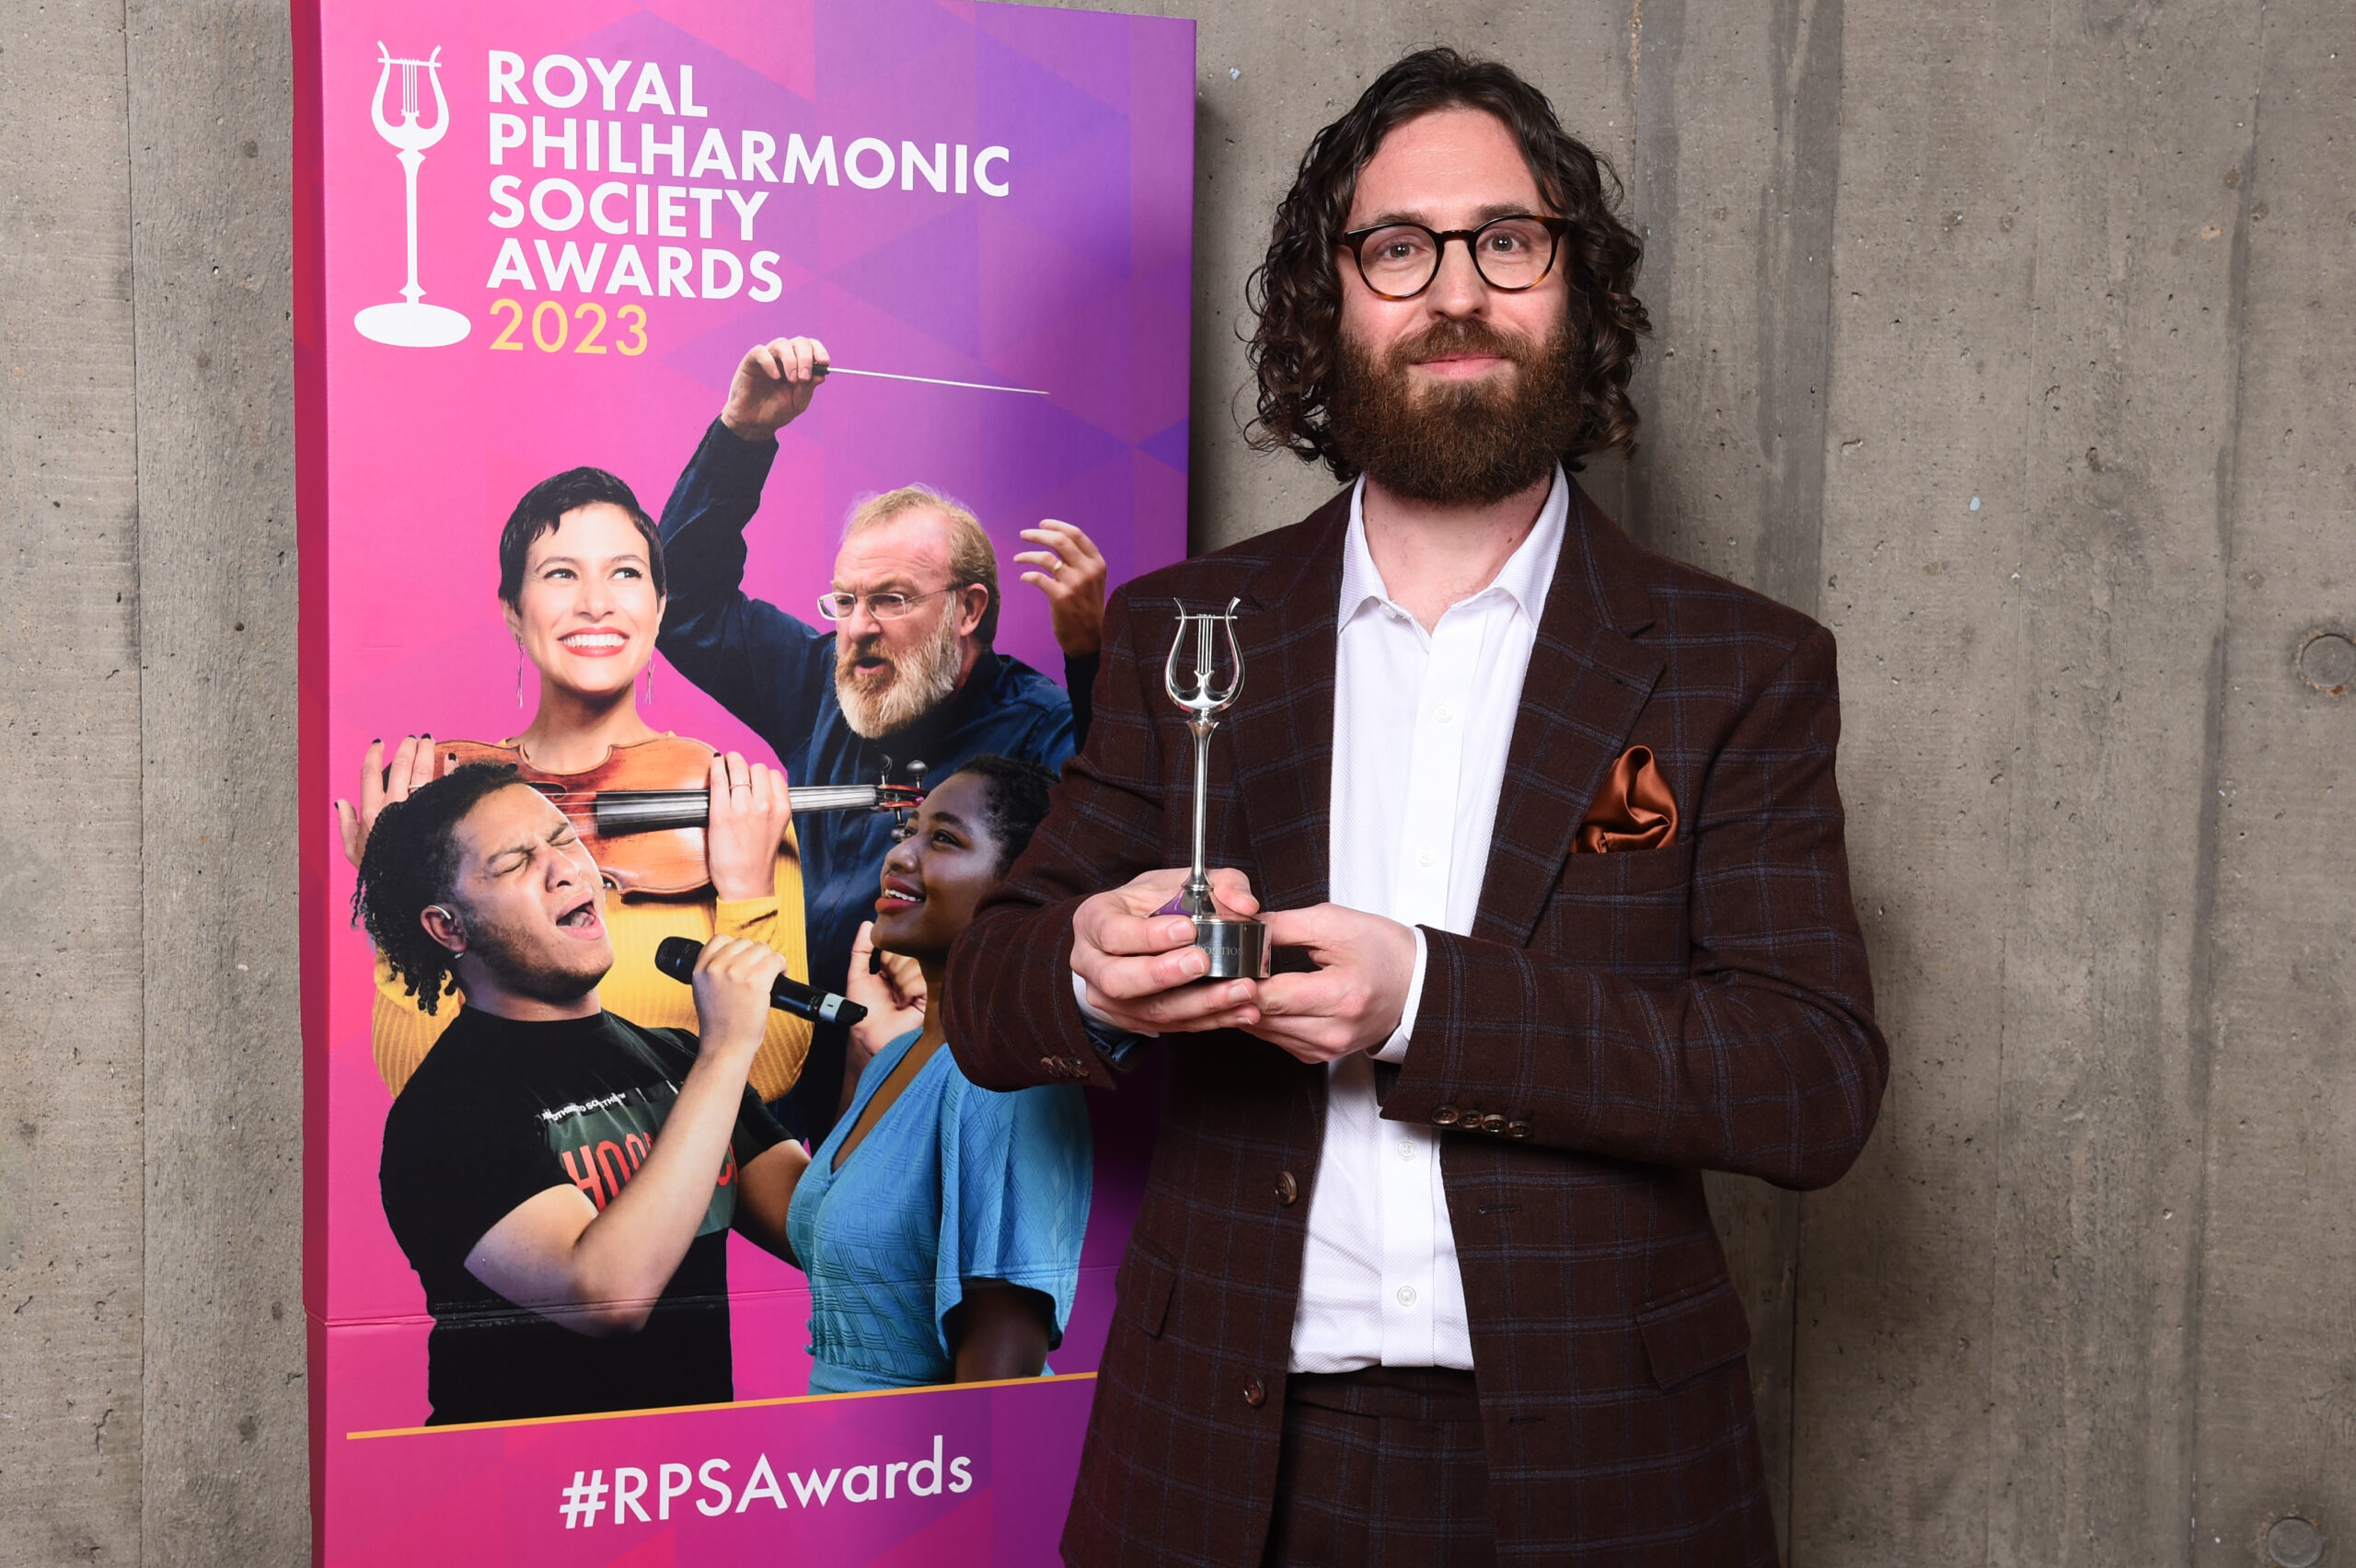 Gavin wins Royal Philharmonic Society Award!